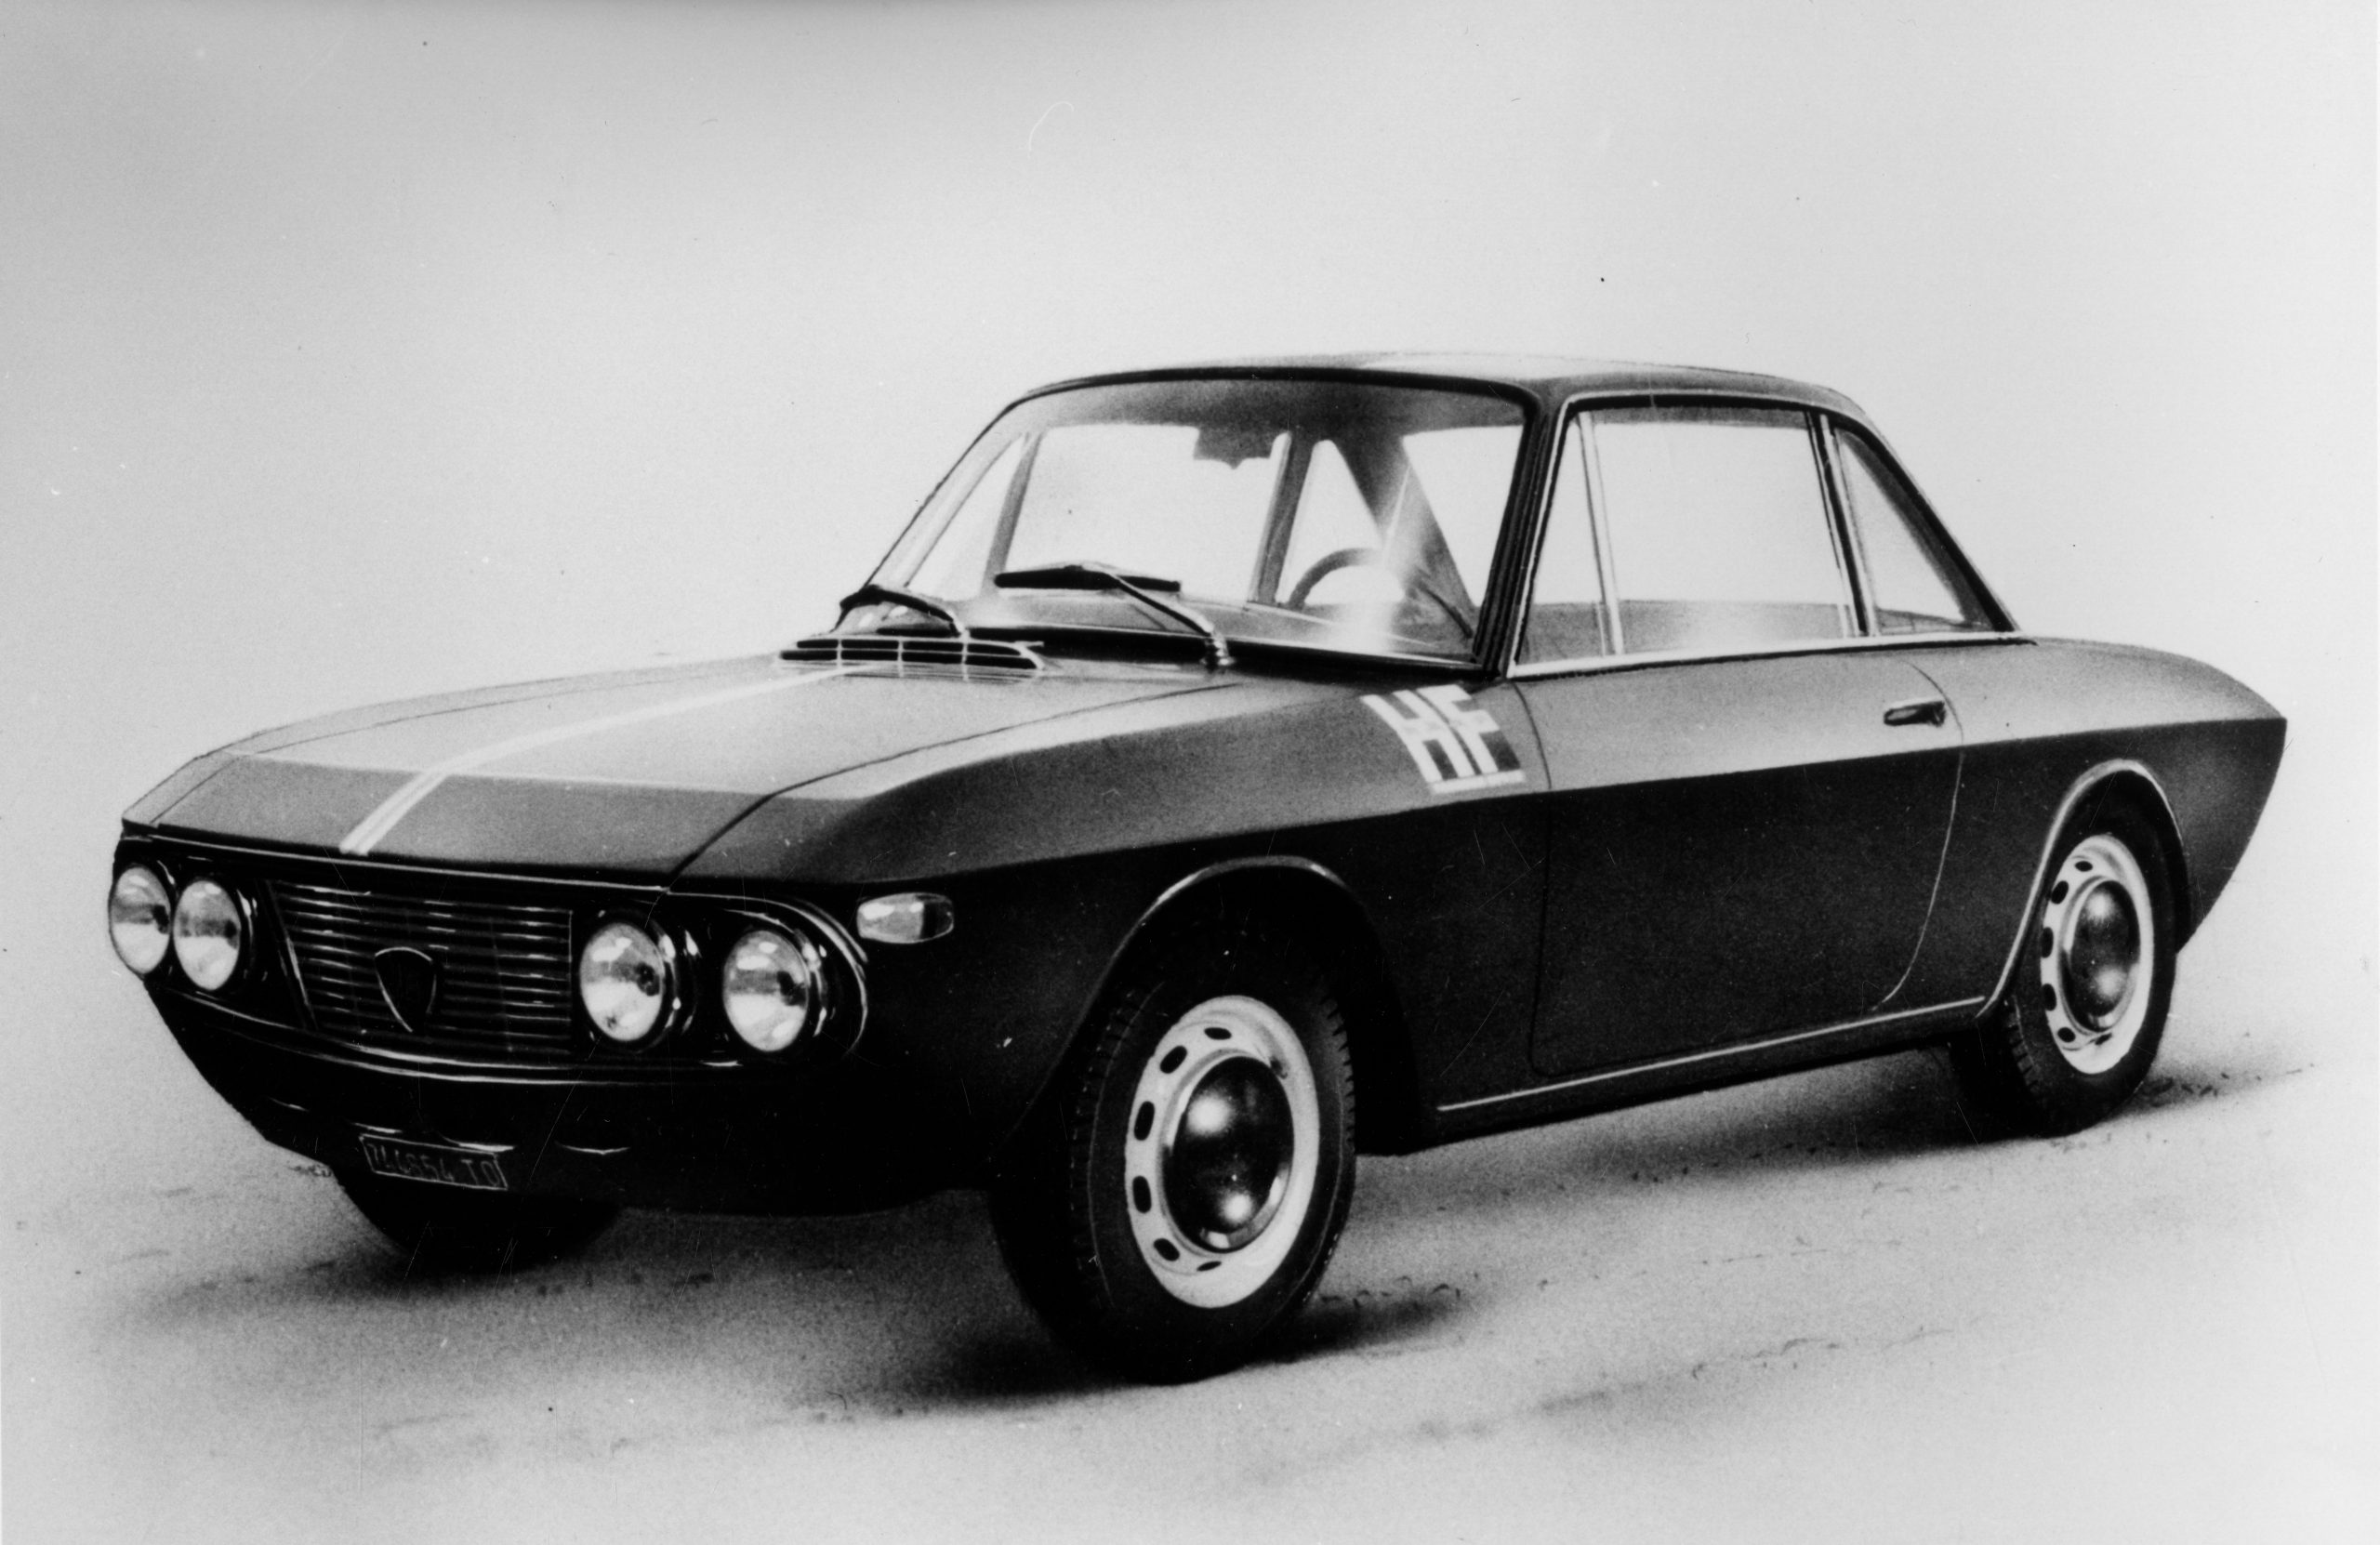 08 Lancia Fulvia Coupe 1.2 HF scaled «Κομψότητα σε κίνηση» : To νέο ντοκιμαντέρ της Lancia, για την 115η επέτειο της